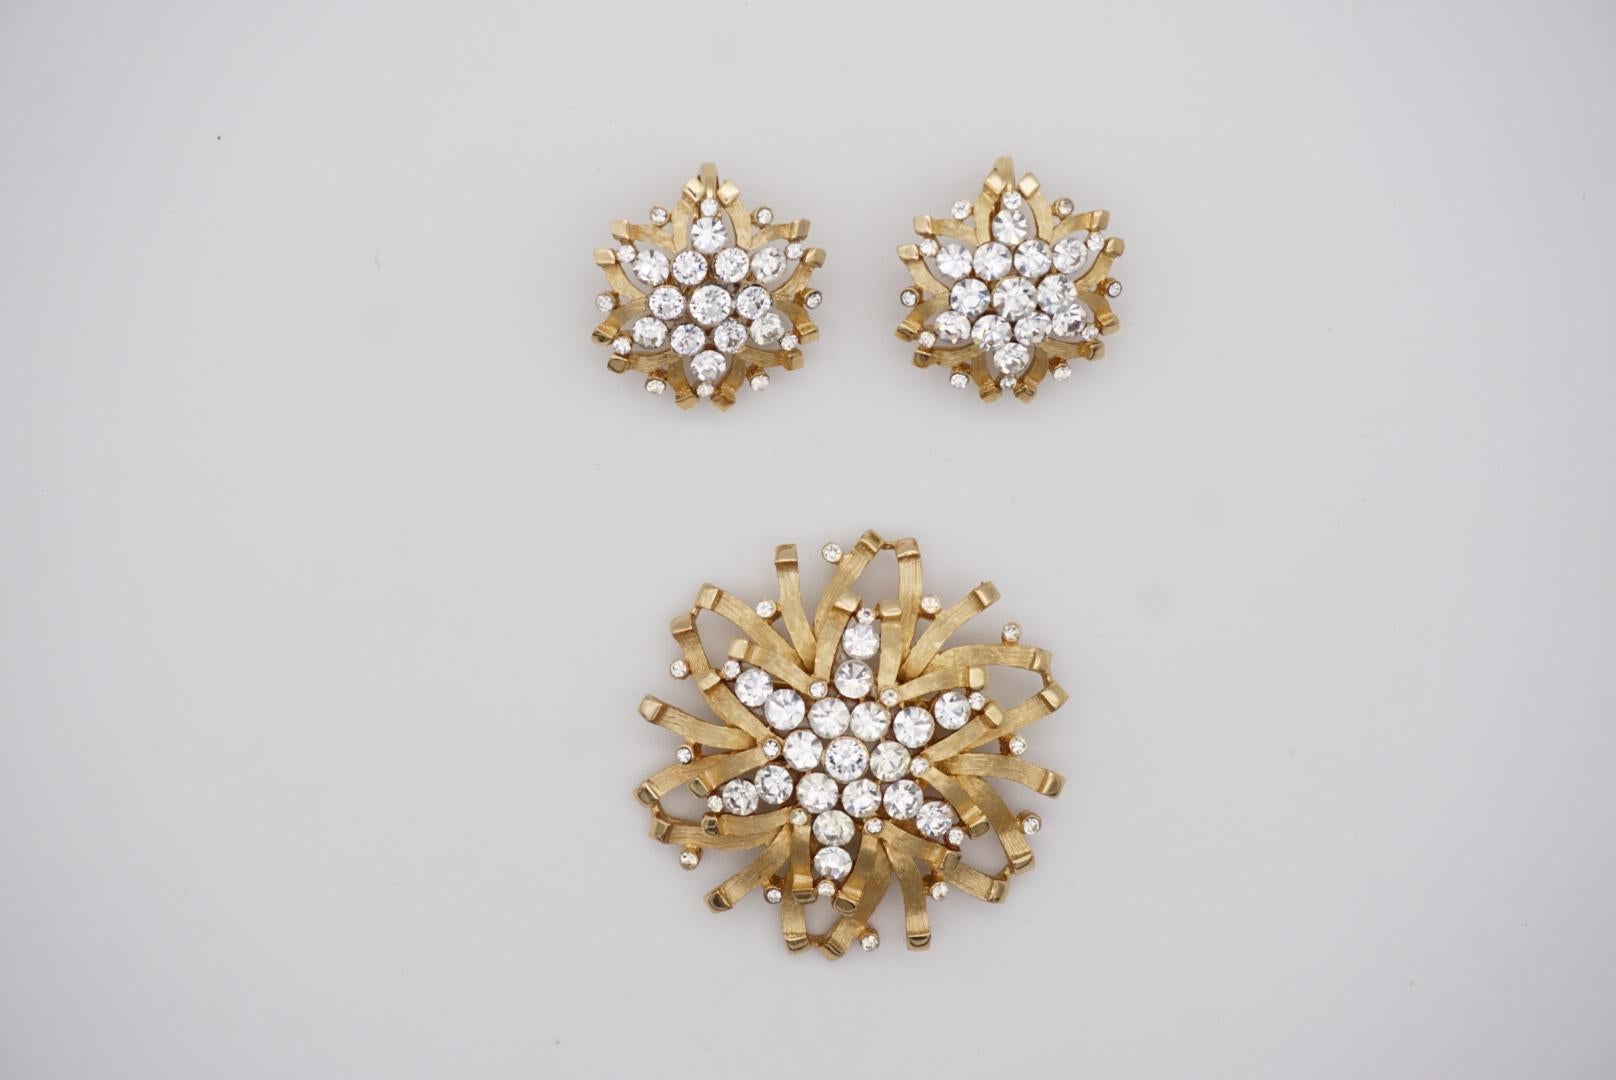 Crown Trifari Vintage 1950s Snowflakes Crystals Jewellery Set Earrings Brooch For Sale 6